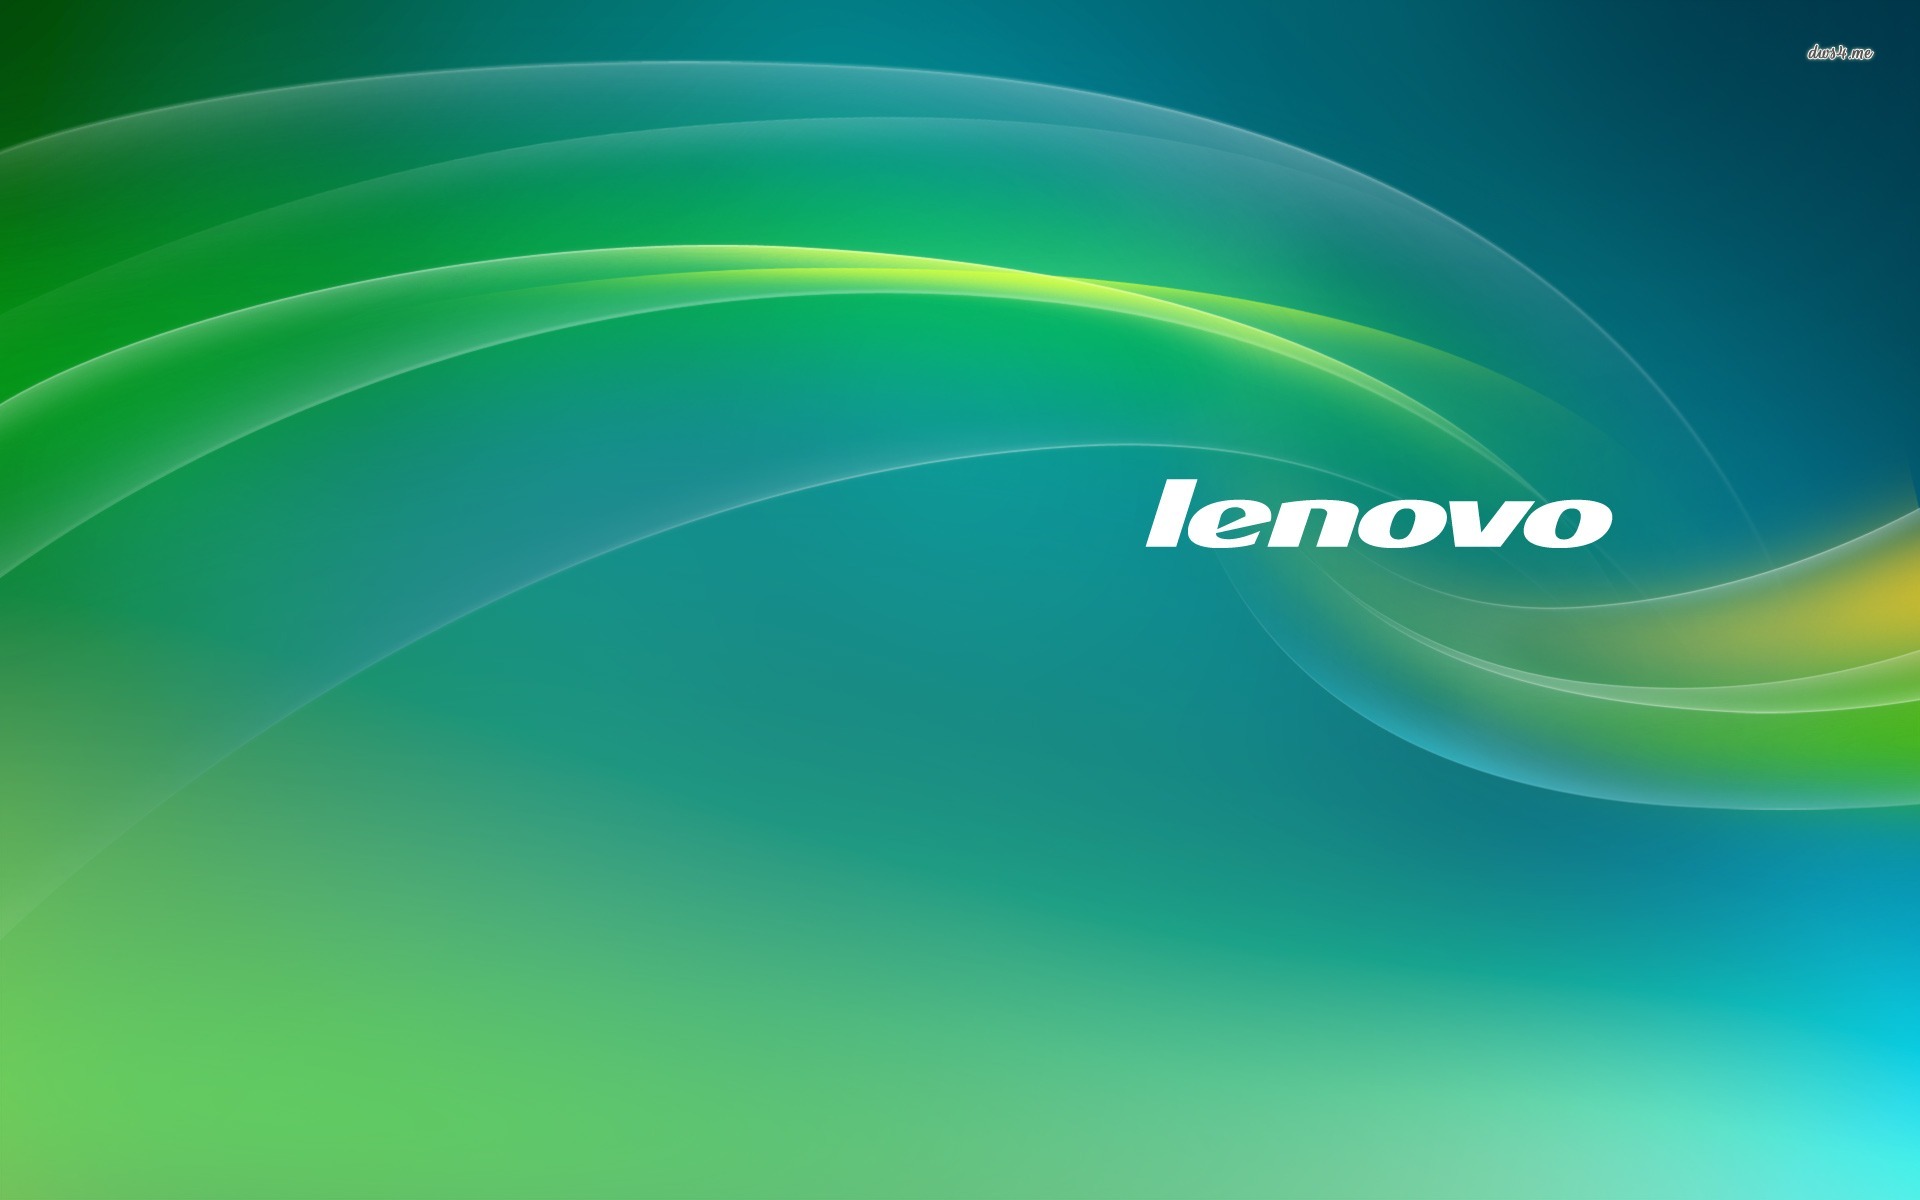 Lenovo Wallpaper - Lenovo Windows 7 Background , HD Wallpaper & Backgrounds